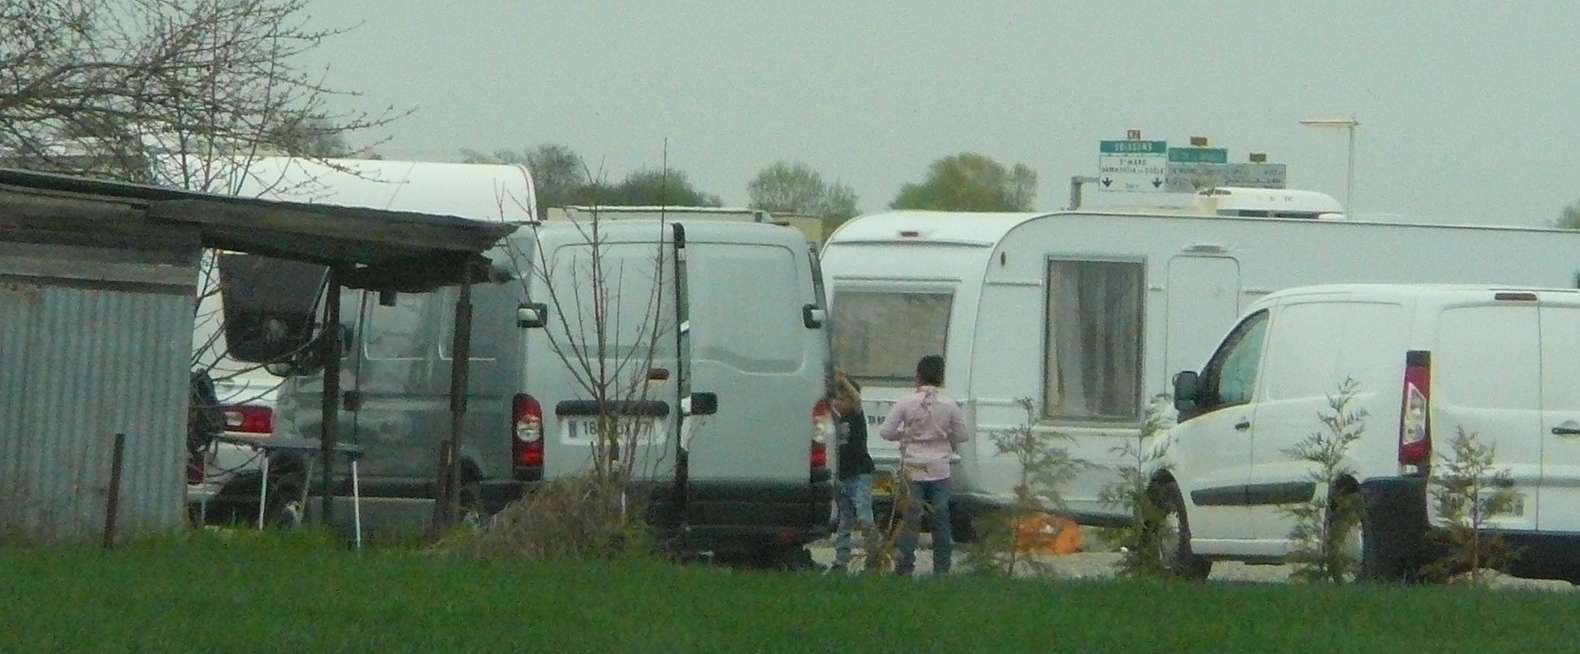 Les caravanes installées à Mitry-Bourg 001